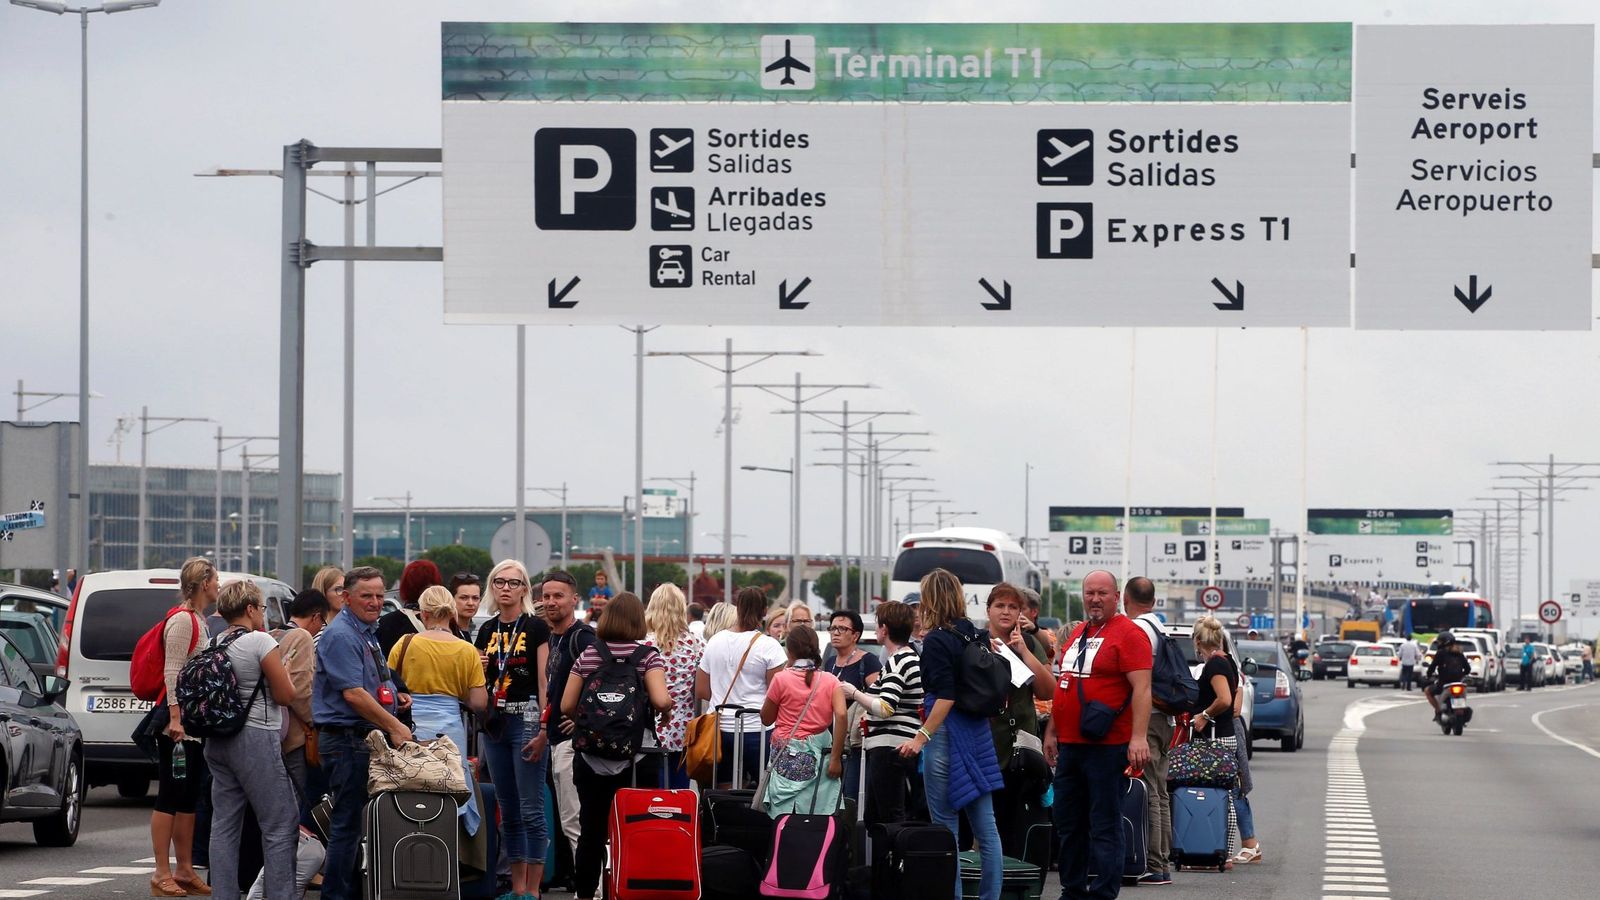 Foto: Accesos al aeropuerto Josep Tarradellas Barcelona - El Prat. (EFE)